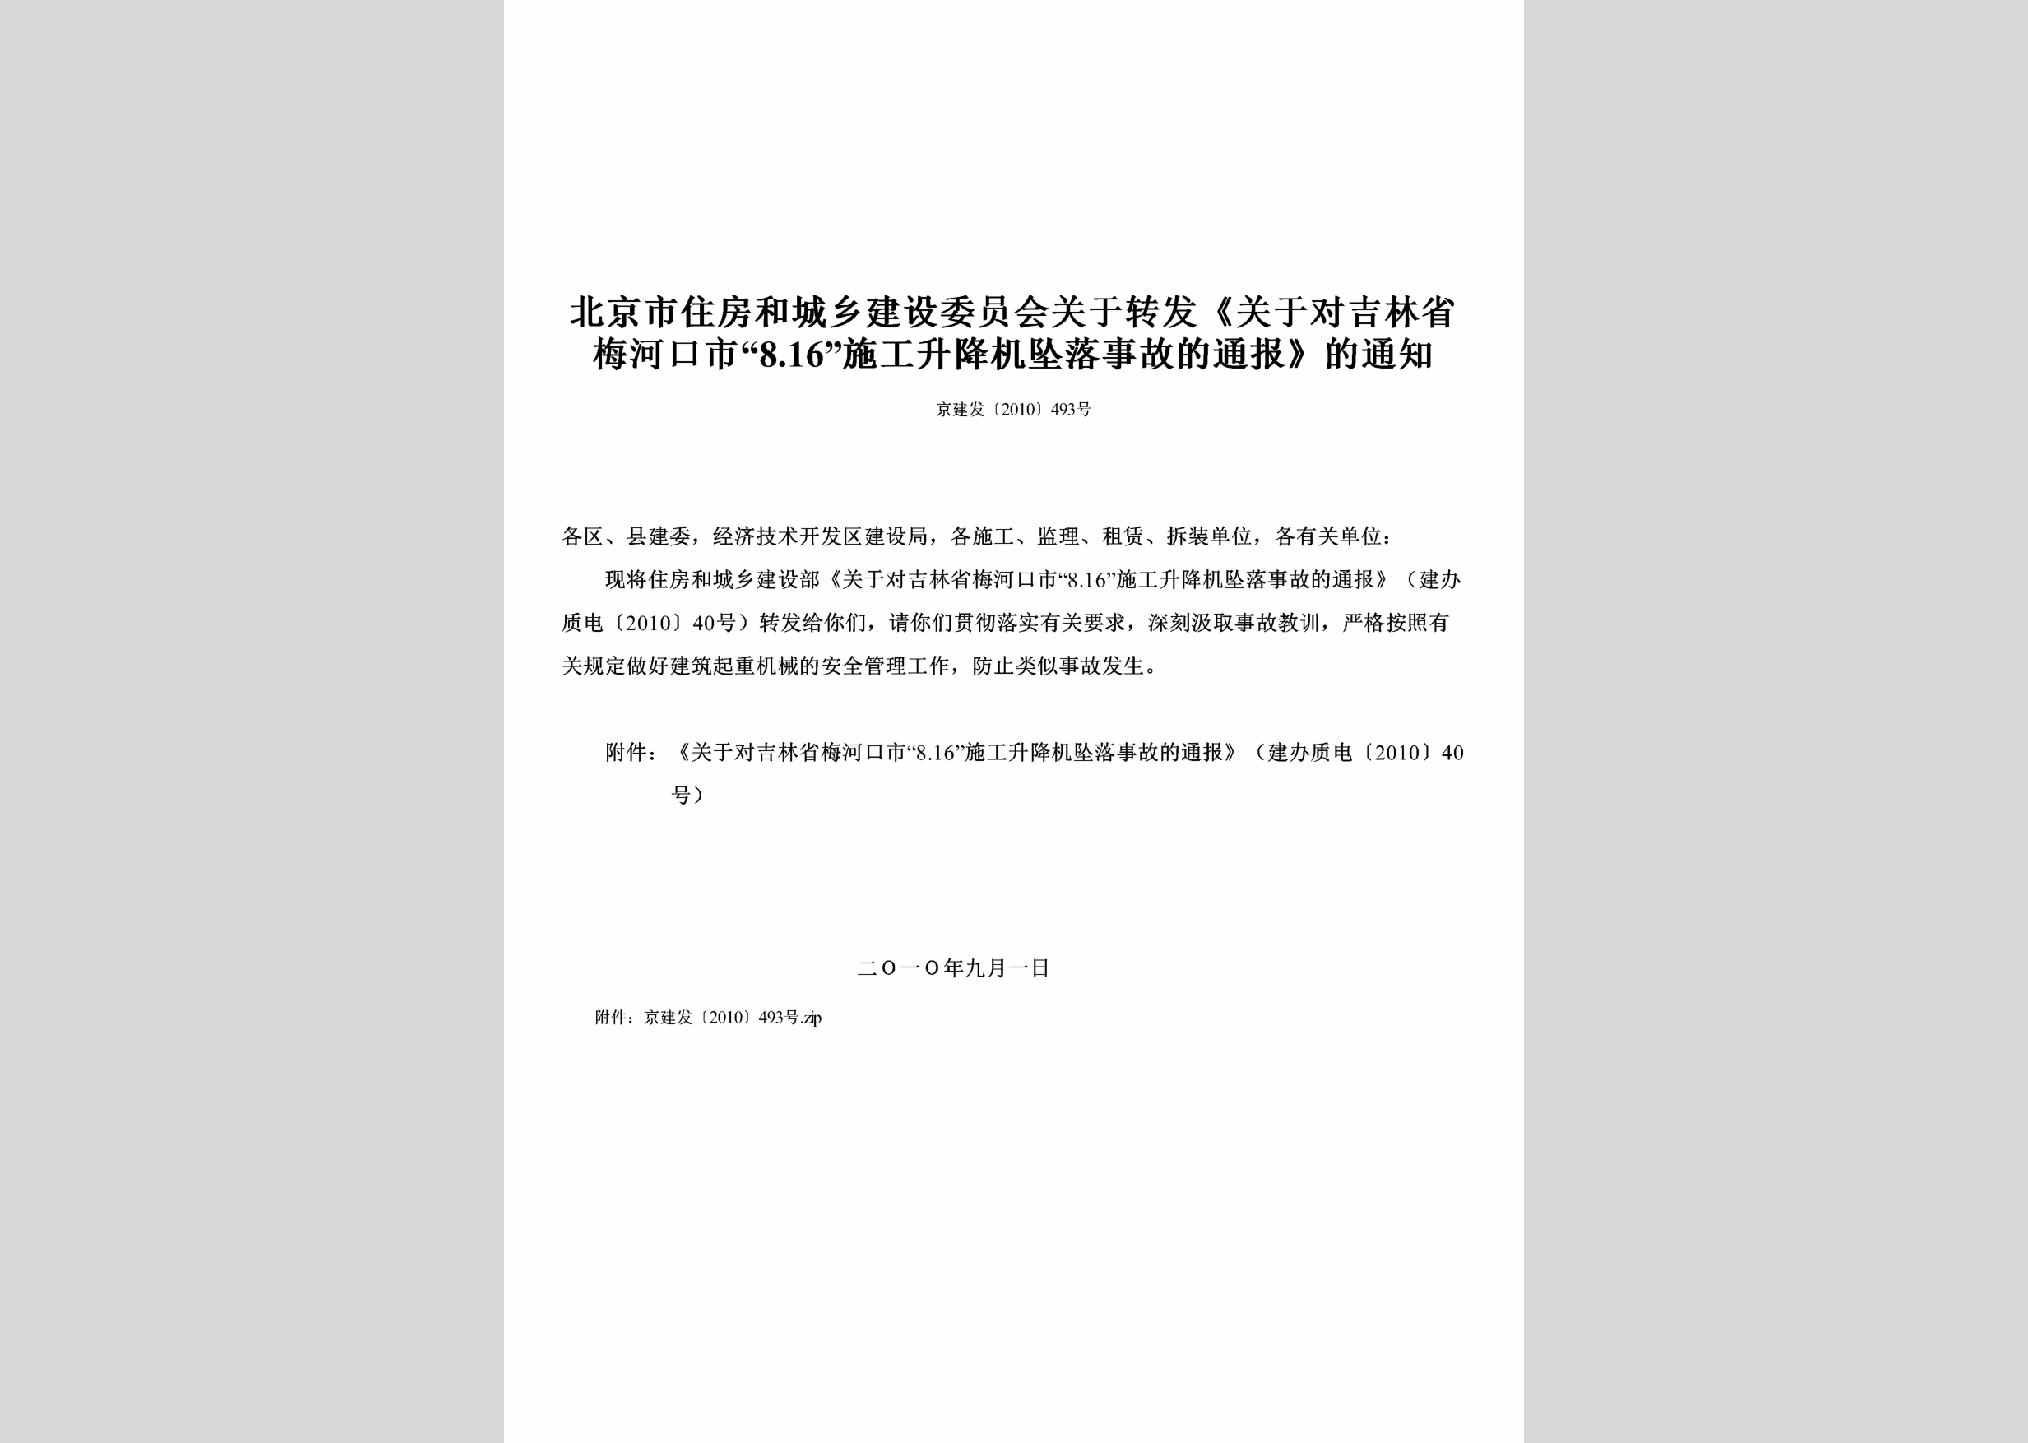 京建发[2010]493号：关于转发《关于对吉林省梅河口市“8.16”施工升降机坠落事故的通报》的通知